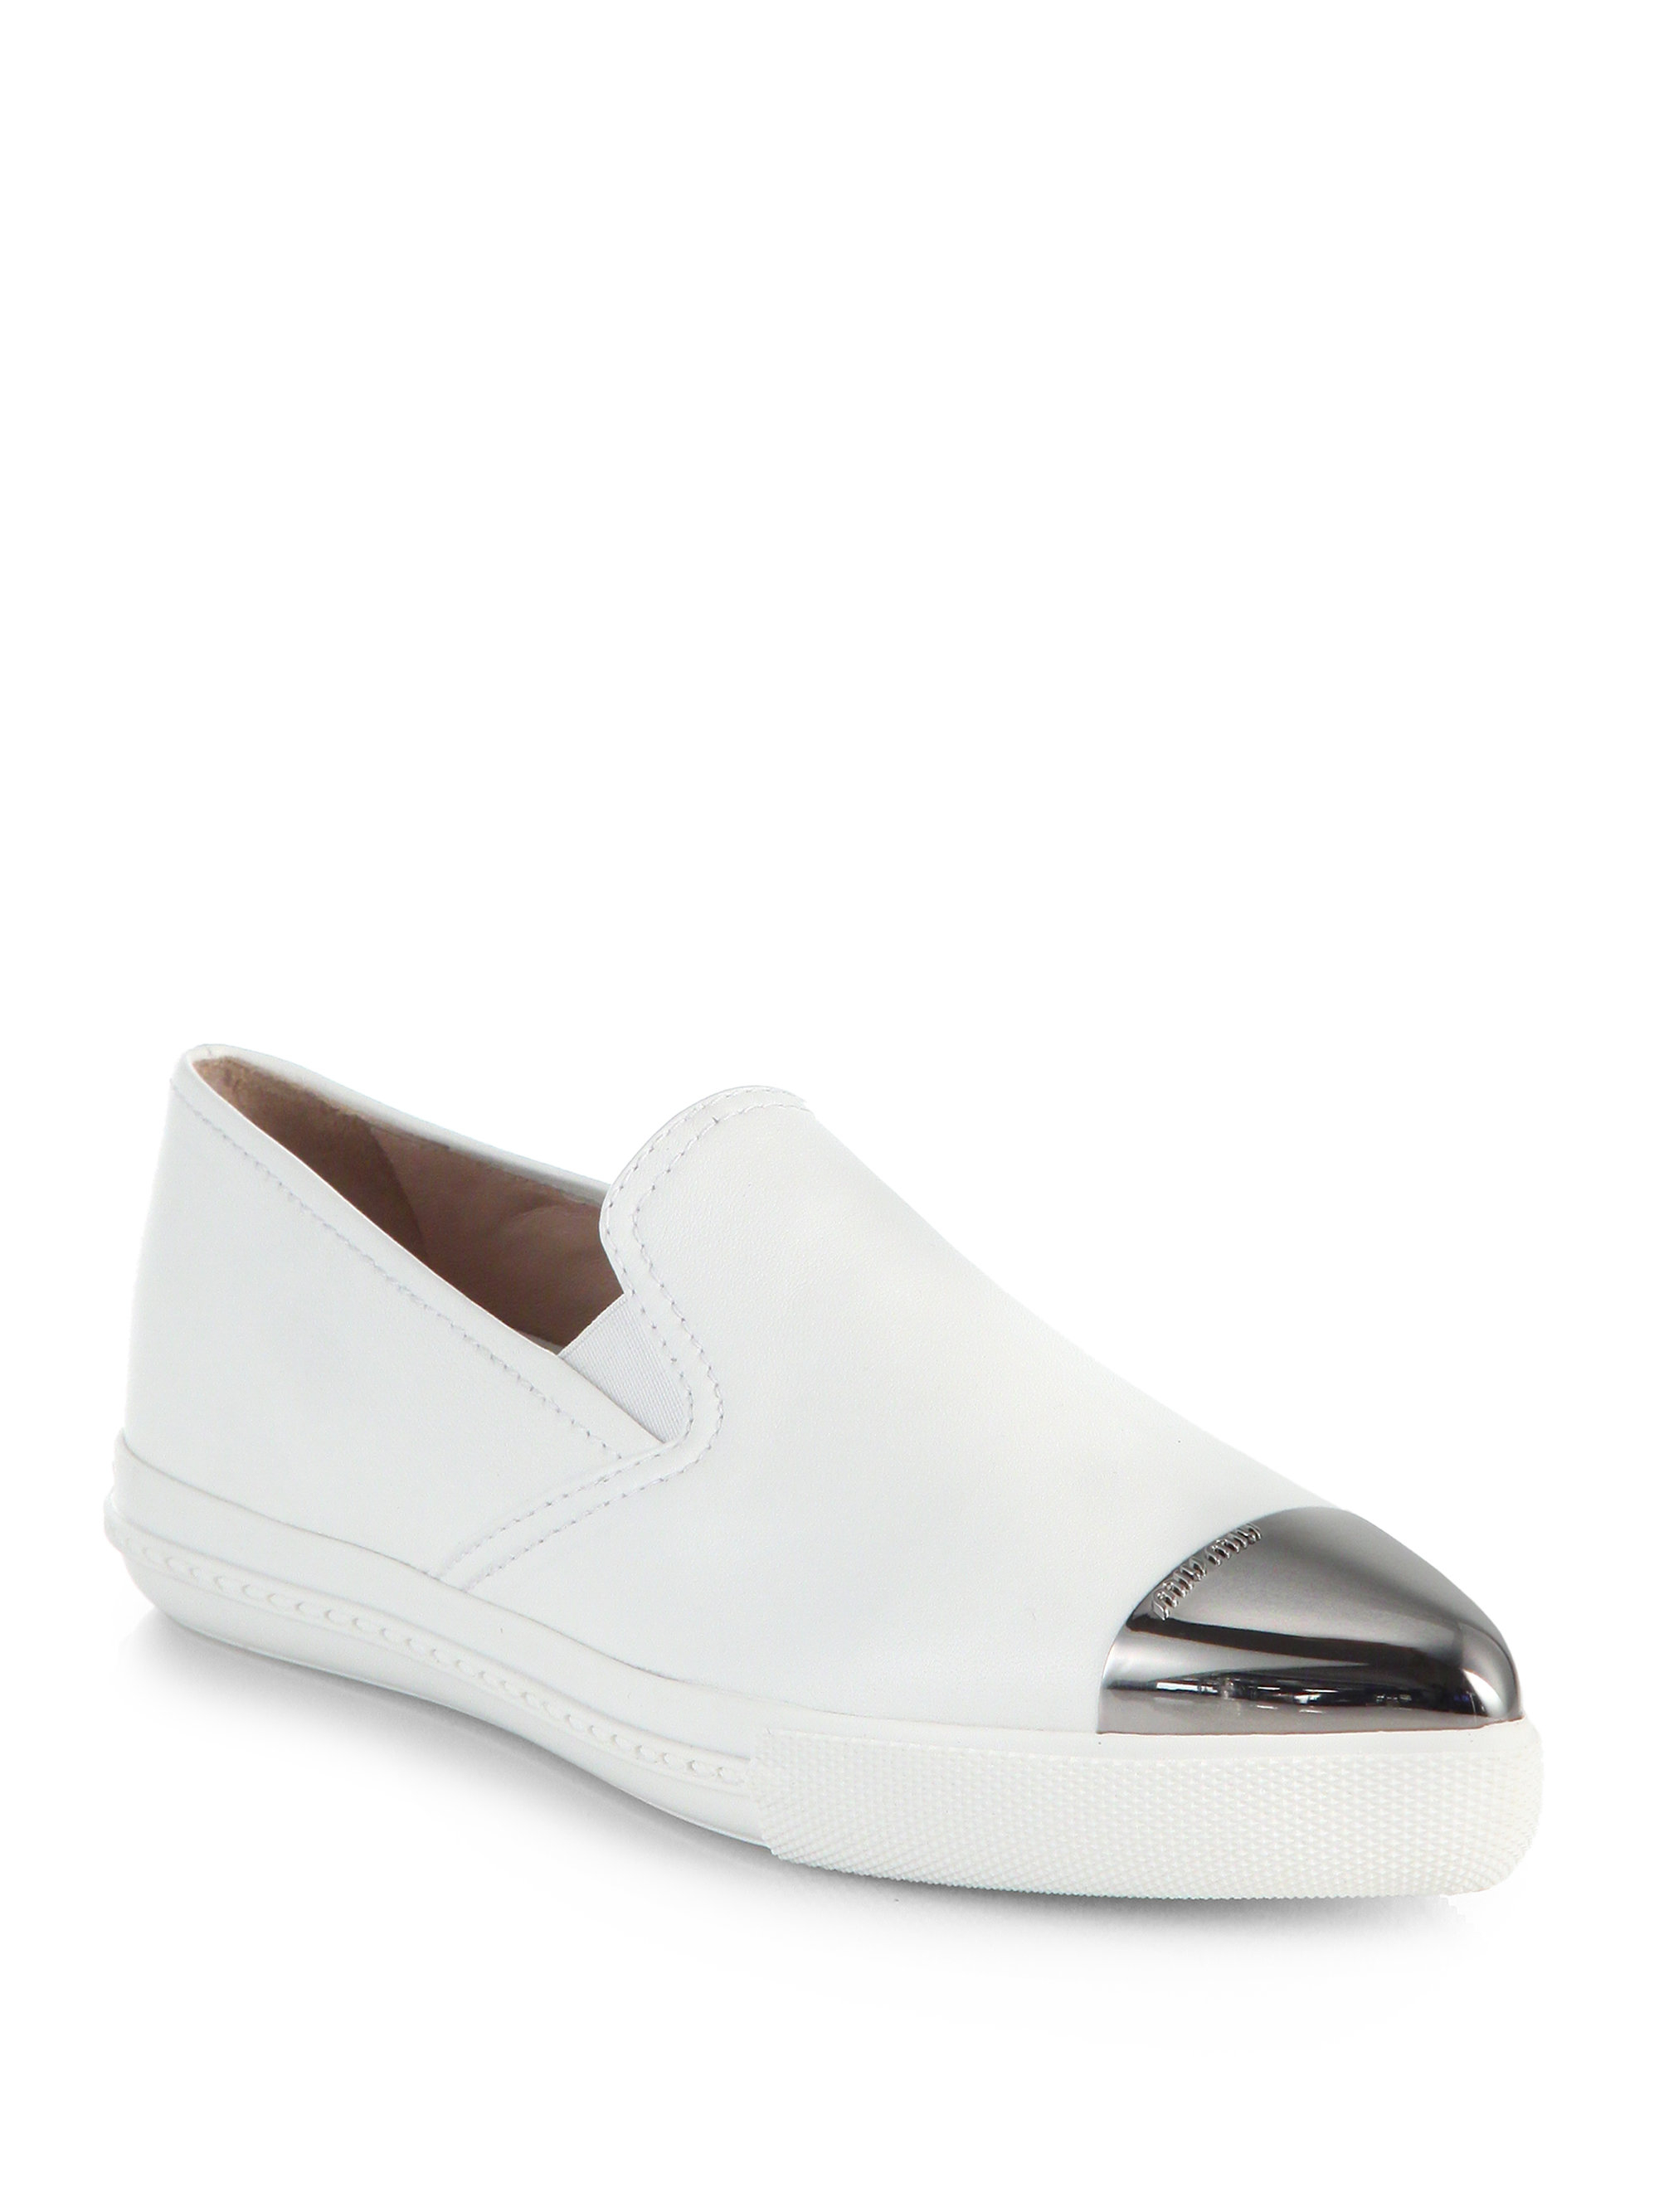 Miu Miu Leather Cap-Toe Skate Shoes in White - Lyst